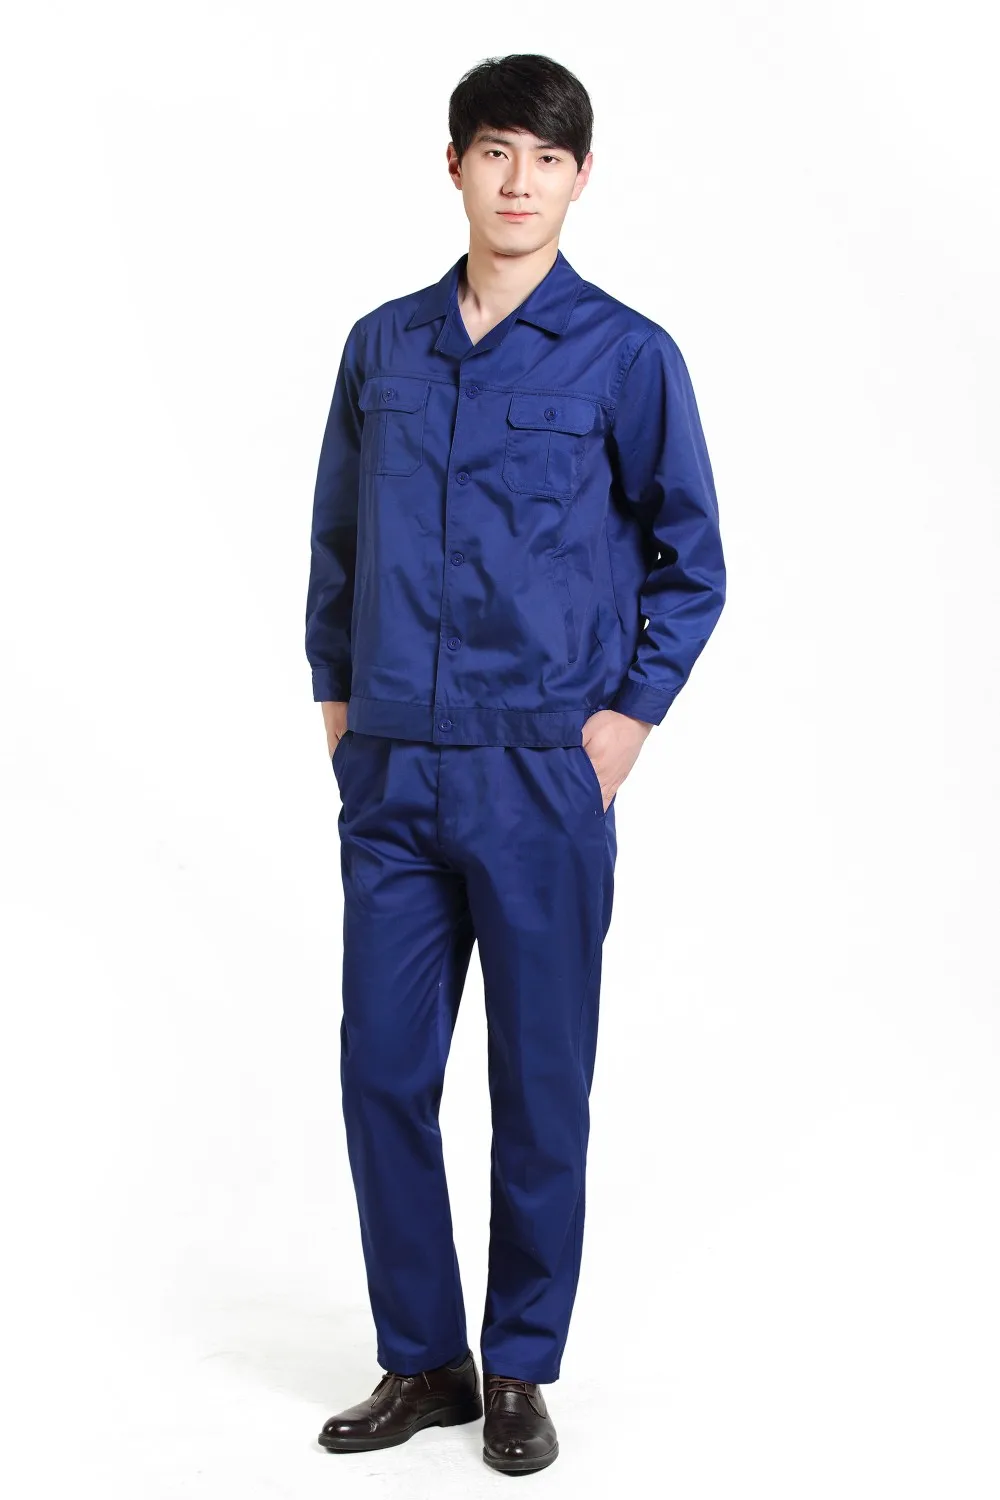 Professional Workwear Uniform Workwear For Men In Blue Wear Abrasion ...